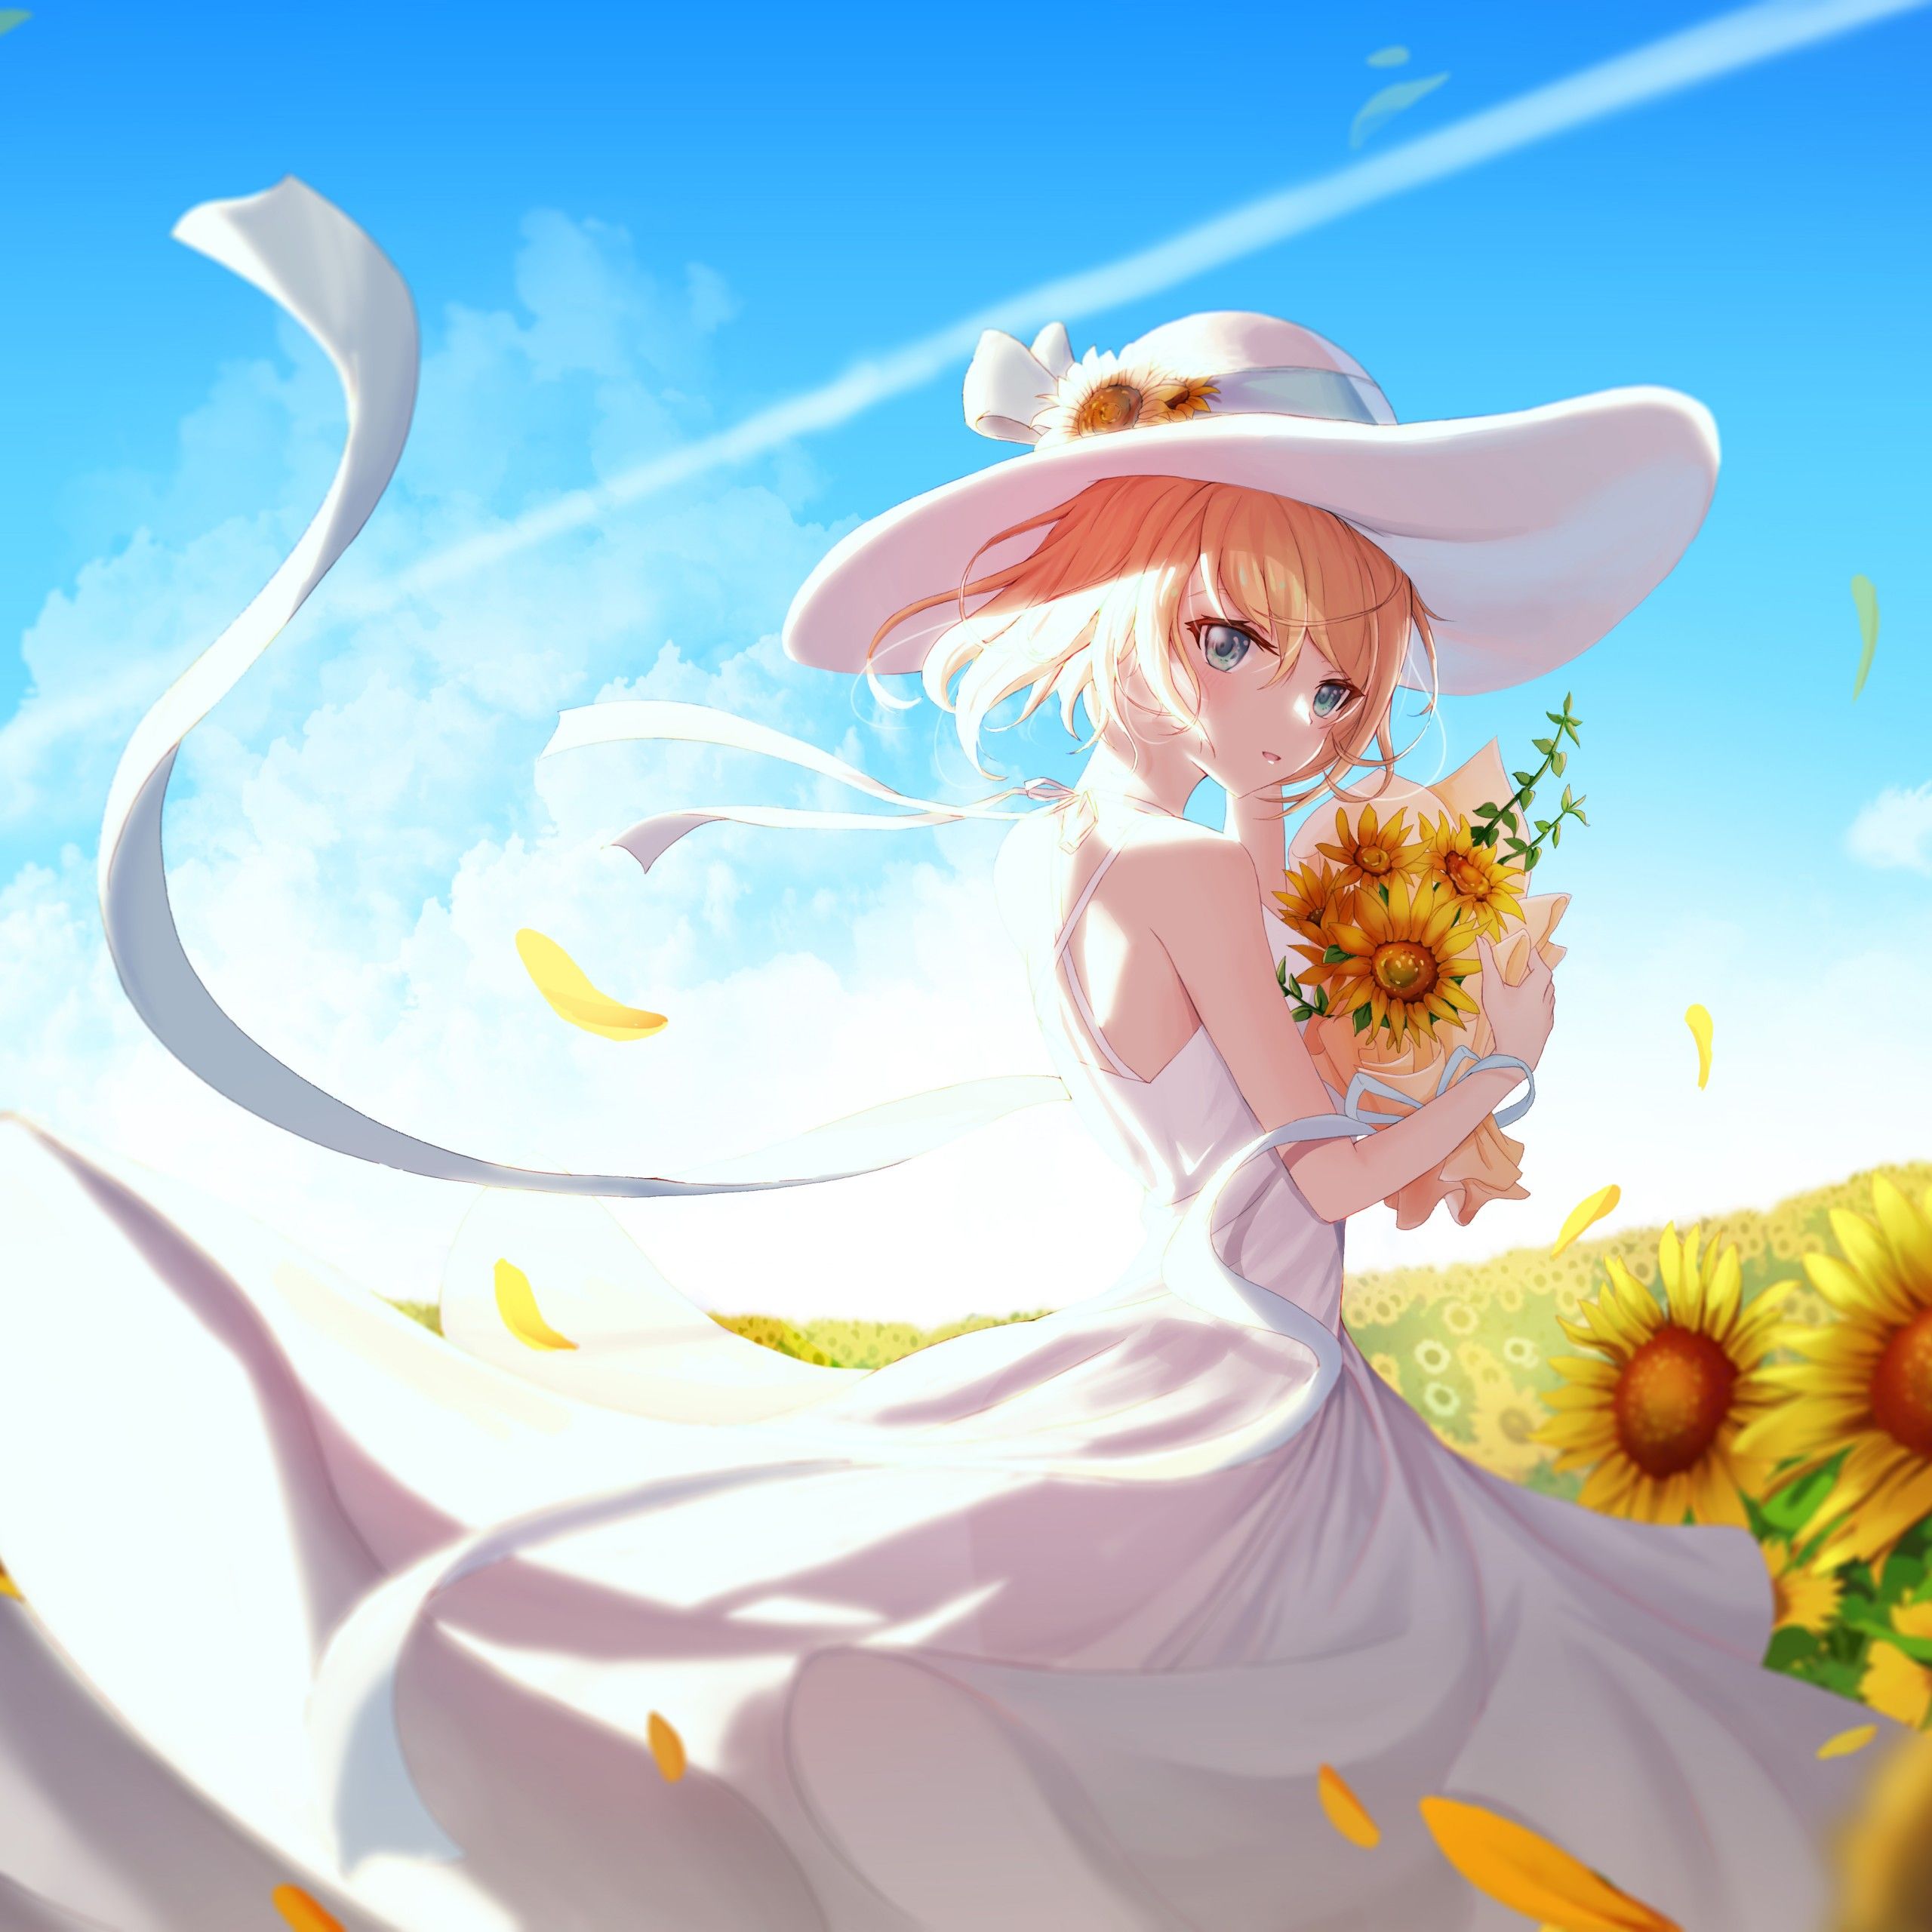 Anime girl 4K Wallpaper, Sunflowers, Sunny day, 5K, Fantasy